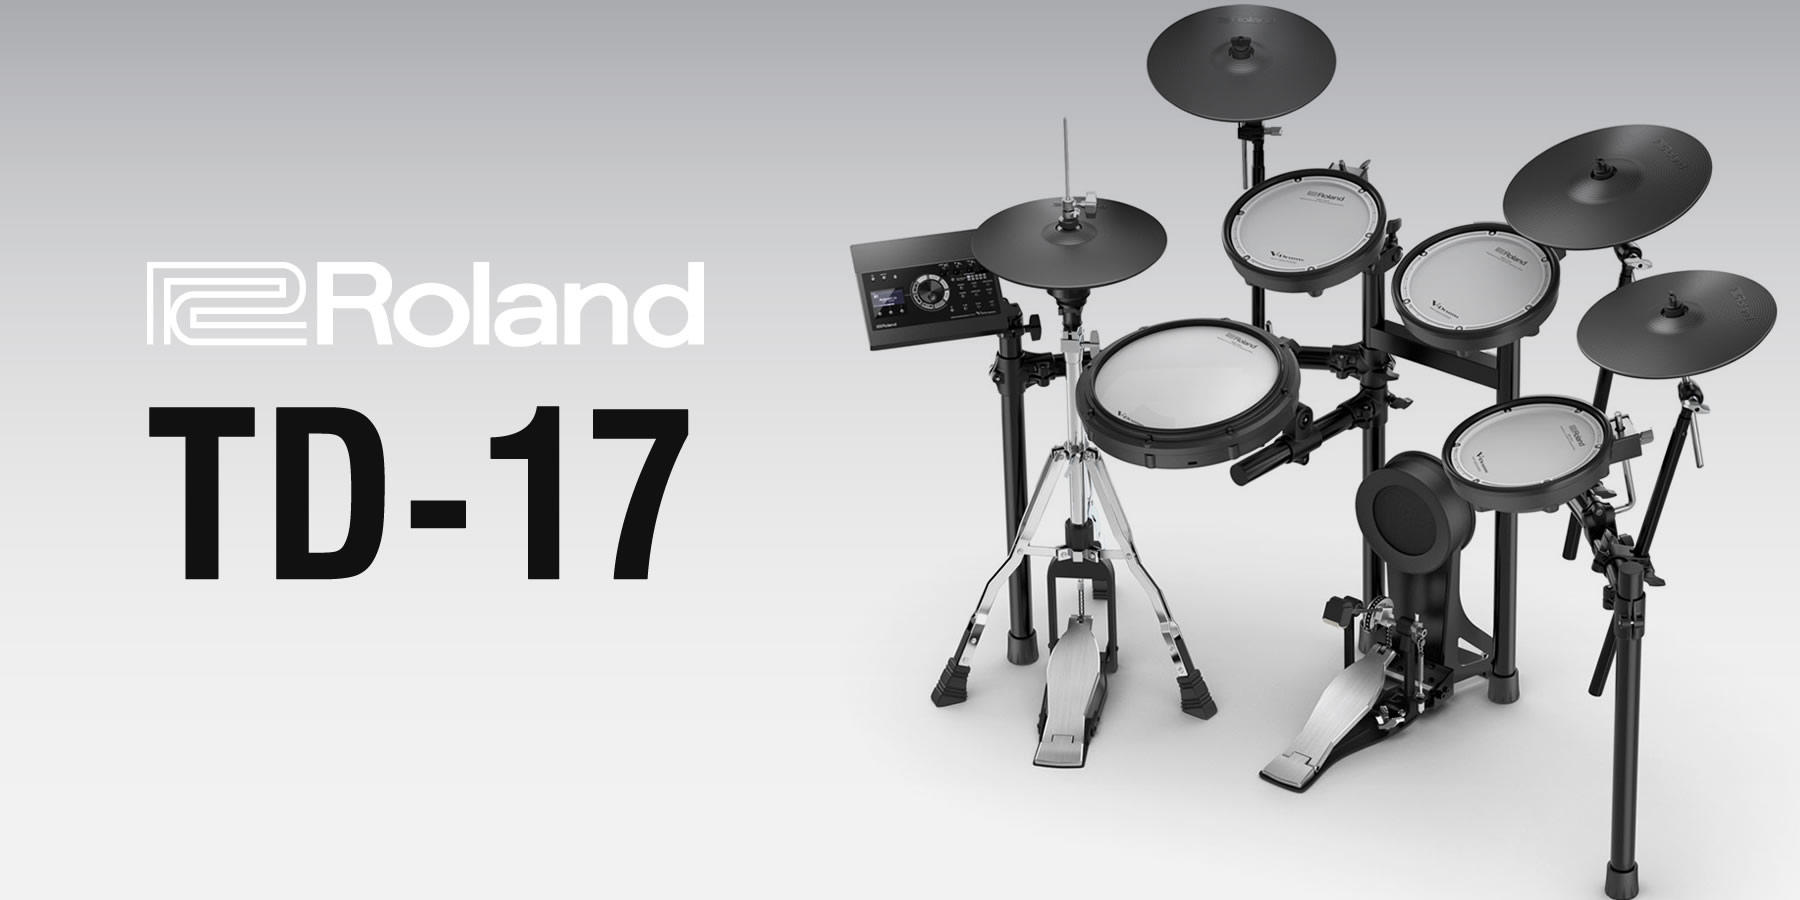 TD-17シリーズ | イケベ楽器店【Roland V-Drums】総合カタログ